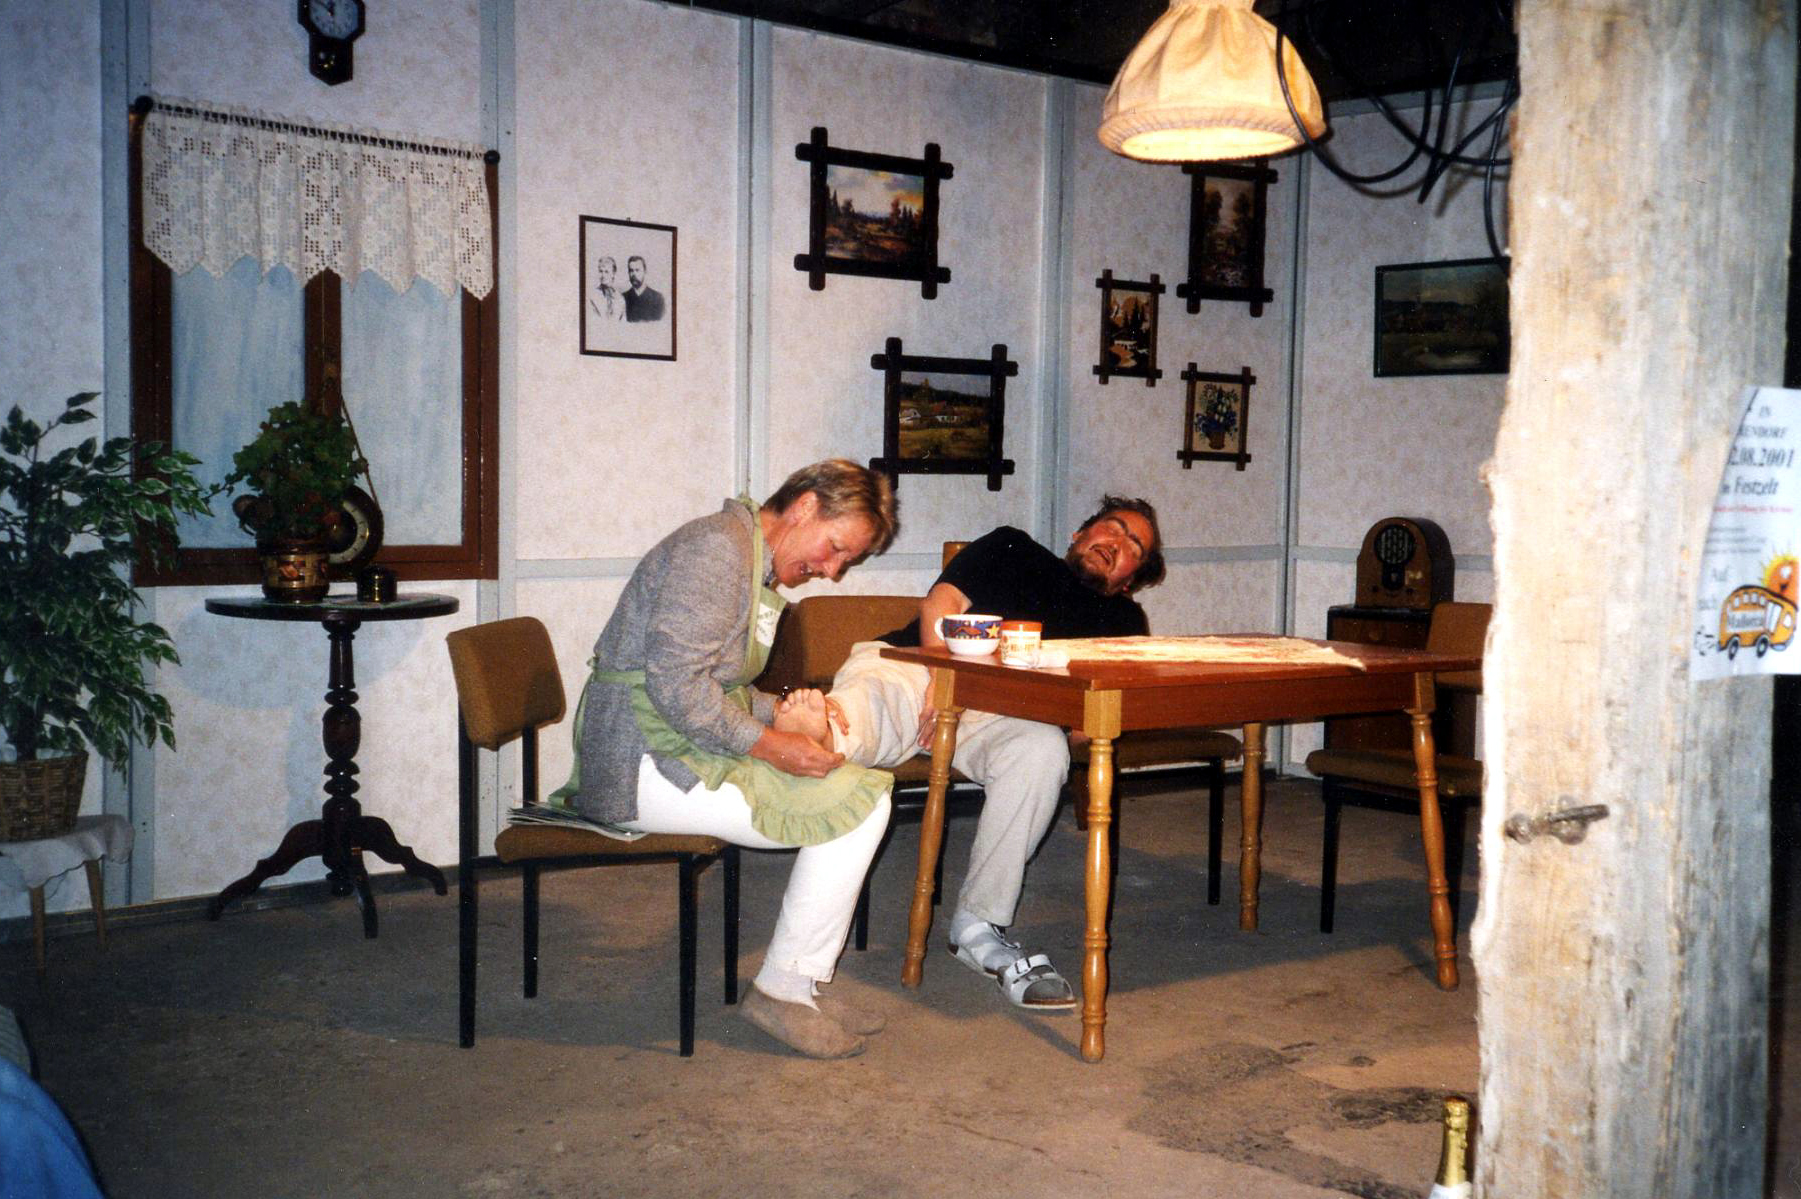 Ein Szenenfoto aus der Theatersaison 2001: Eine Frau und ein Mann sitzen an einem Tisch. Die Frau inspiziert den Fuß des Mannes, den sie auf ihren Knien liegen hat. Der Mann scheint unter Schmerzen zu leiden.